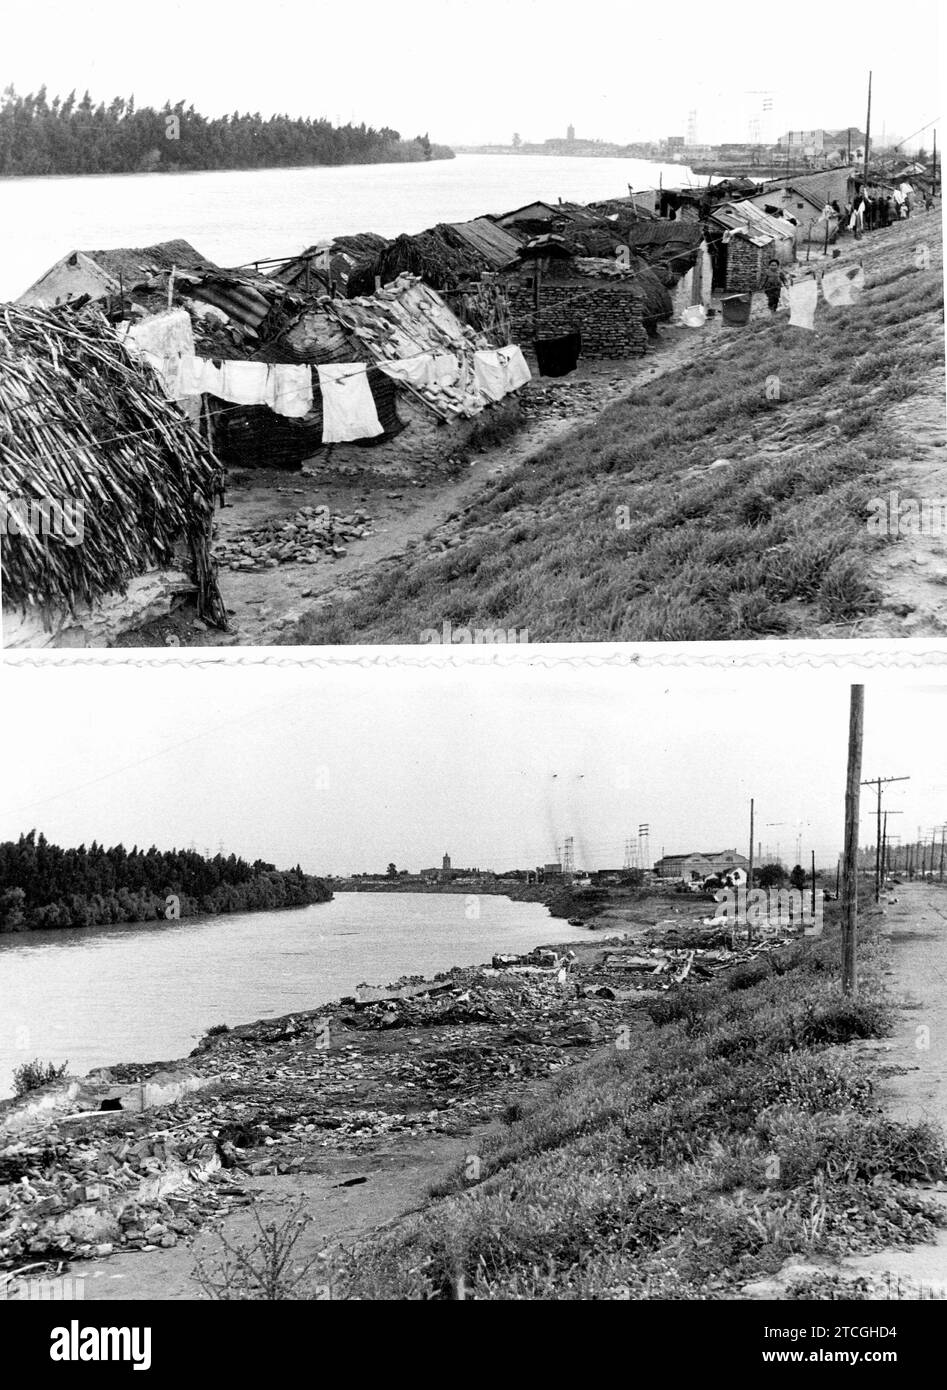 05/31/1960. Queste erano le baraccopoli che sono già state demolite, sulle rive del Guadalquivir. Foto: Gelan. Crediti: Album / Archivo ABC / Ángel Gómez Gelan Foto Stock